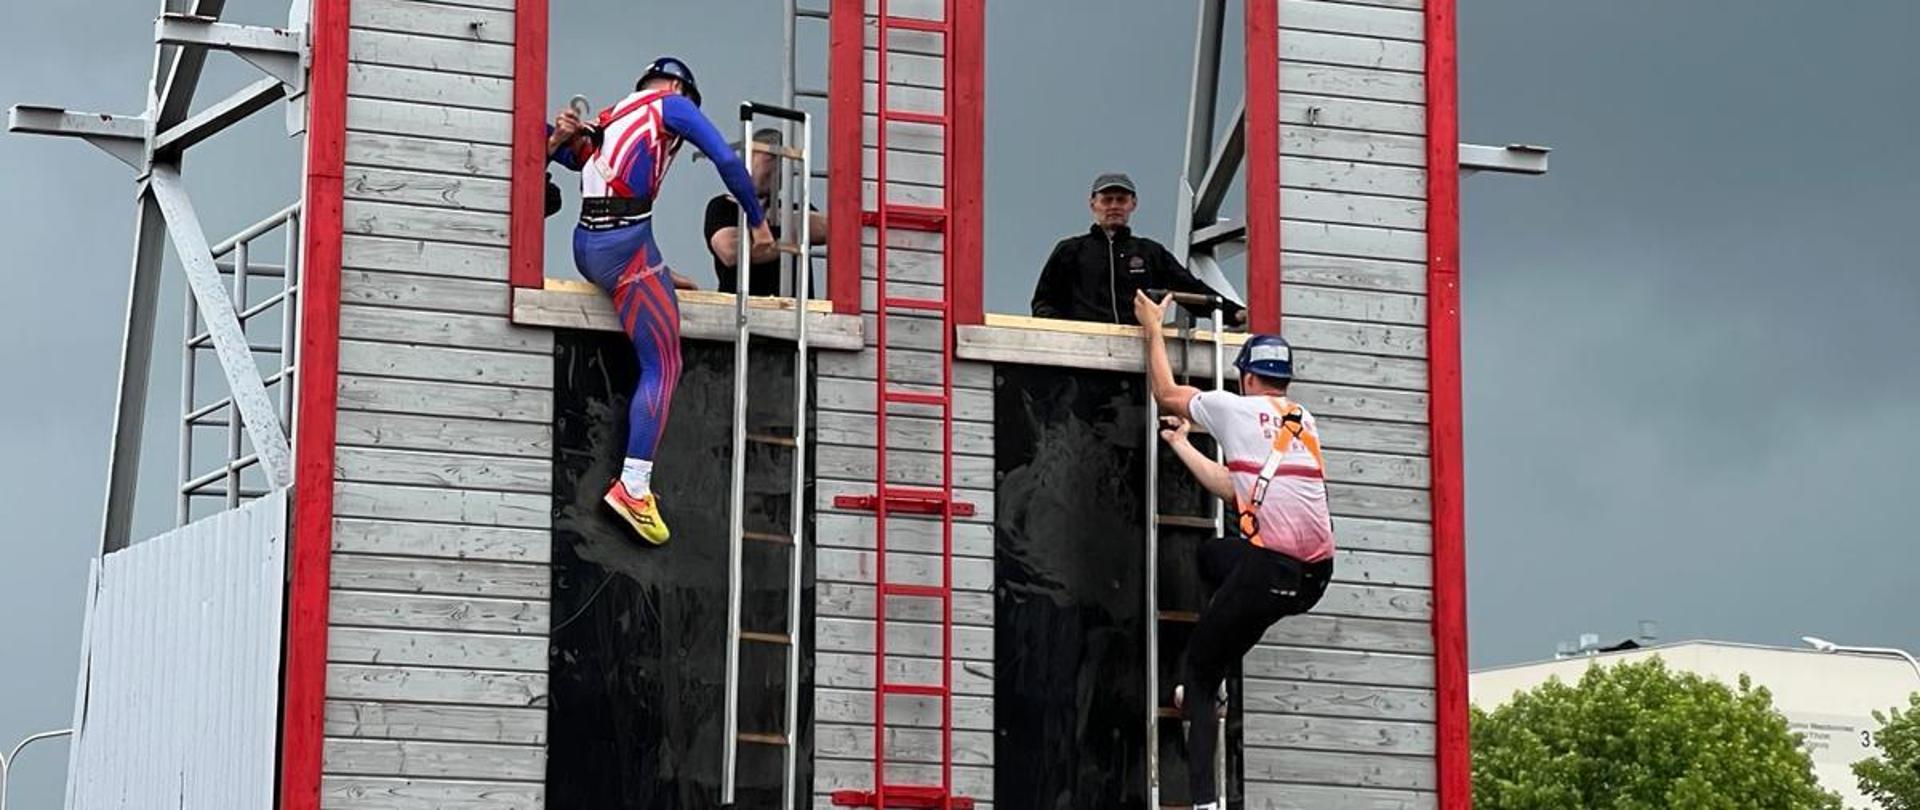 XXXII Świętokrzyski Turniej w Dwuboju Pożarniczym - zawodnicy wspinają się po ścianie z drabiną hakową